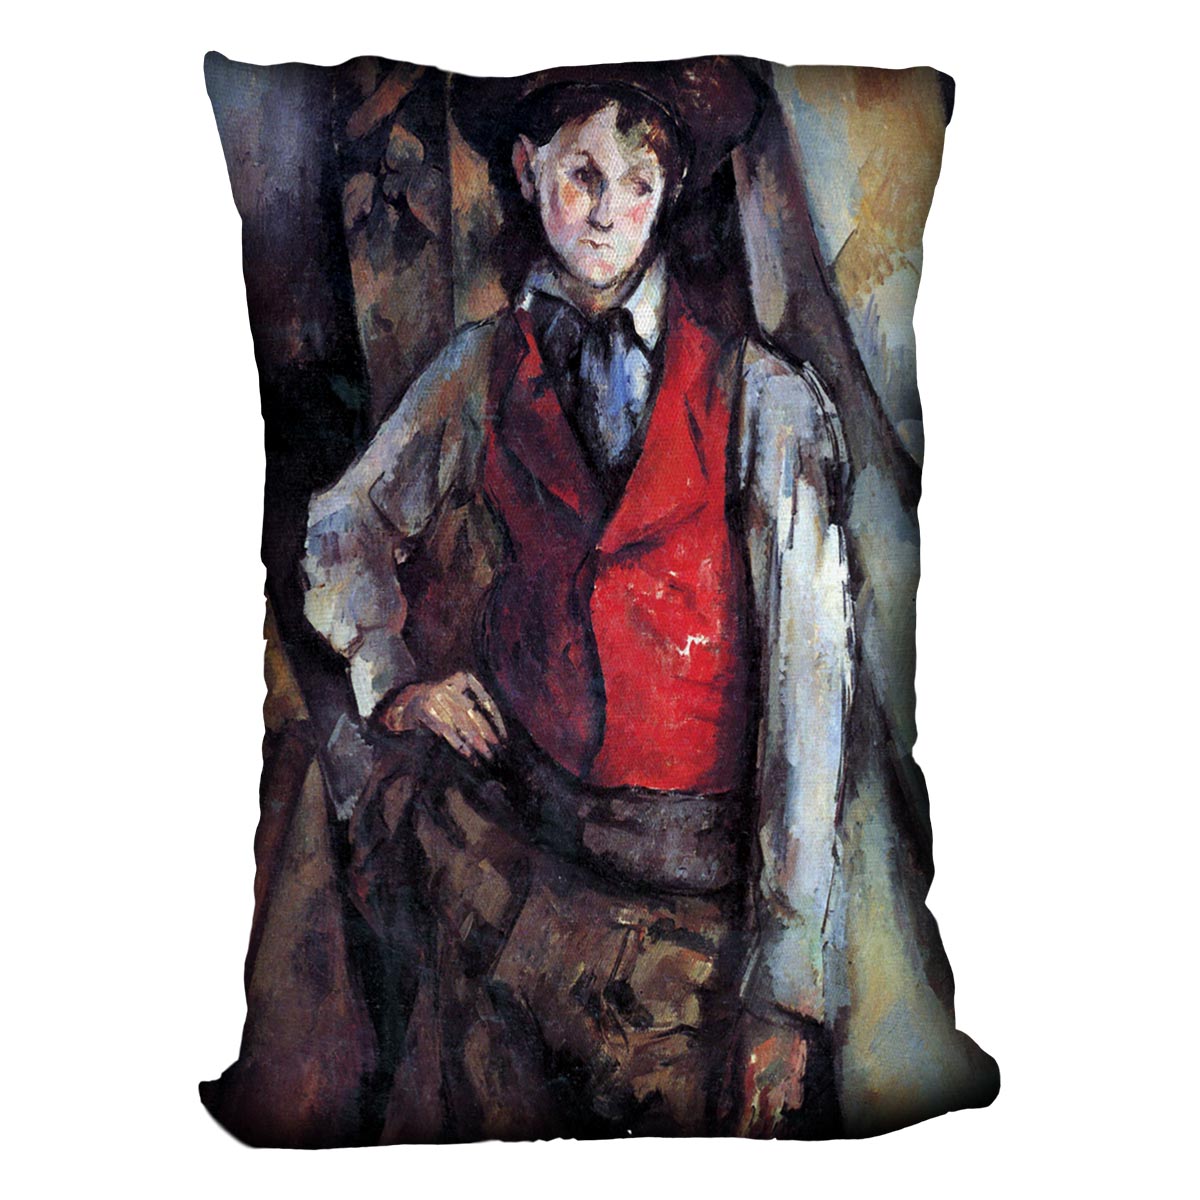 Boy in Red Waistcoat by Cezanne Cushion - Canvas Art Rocks - 4